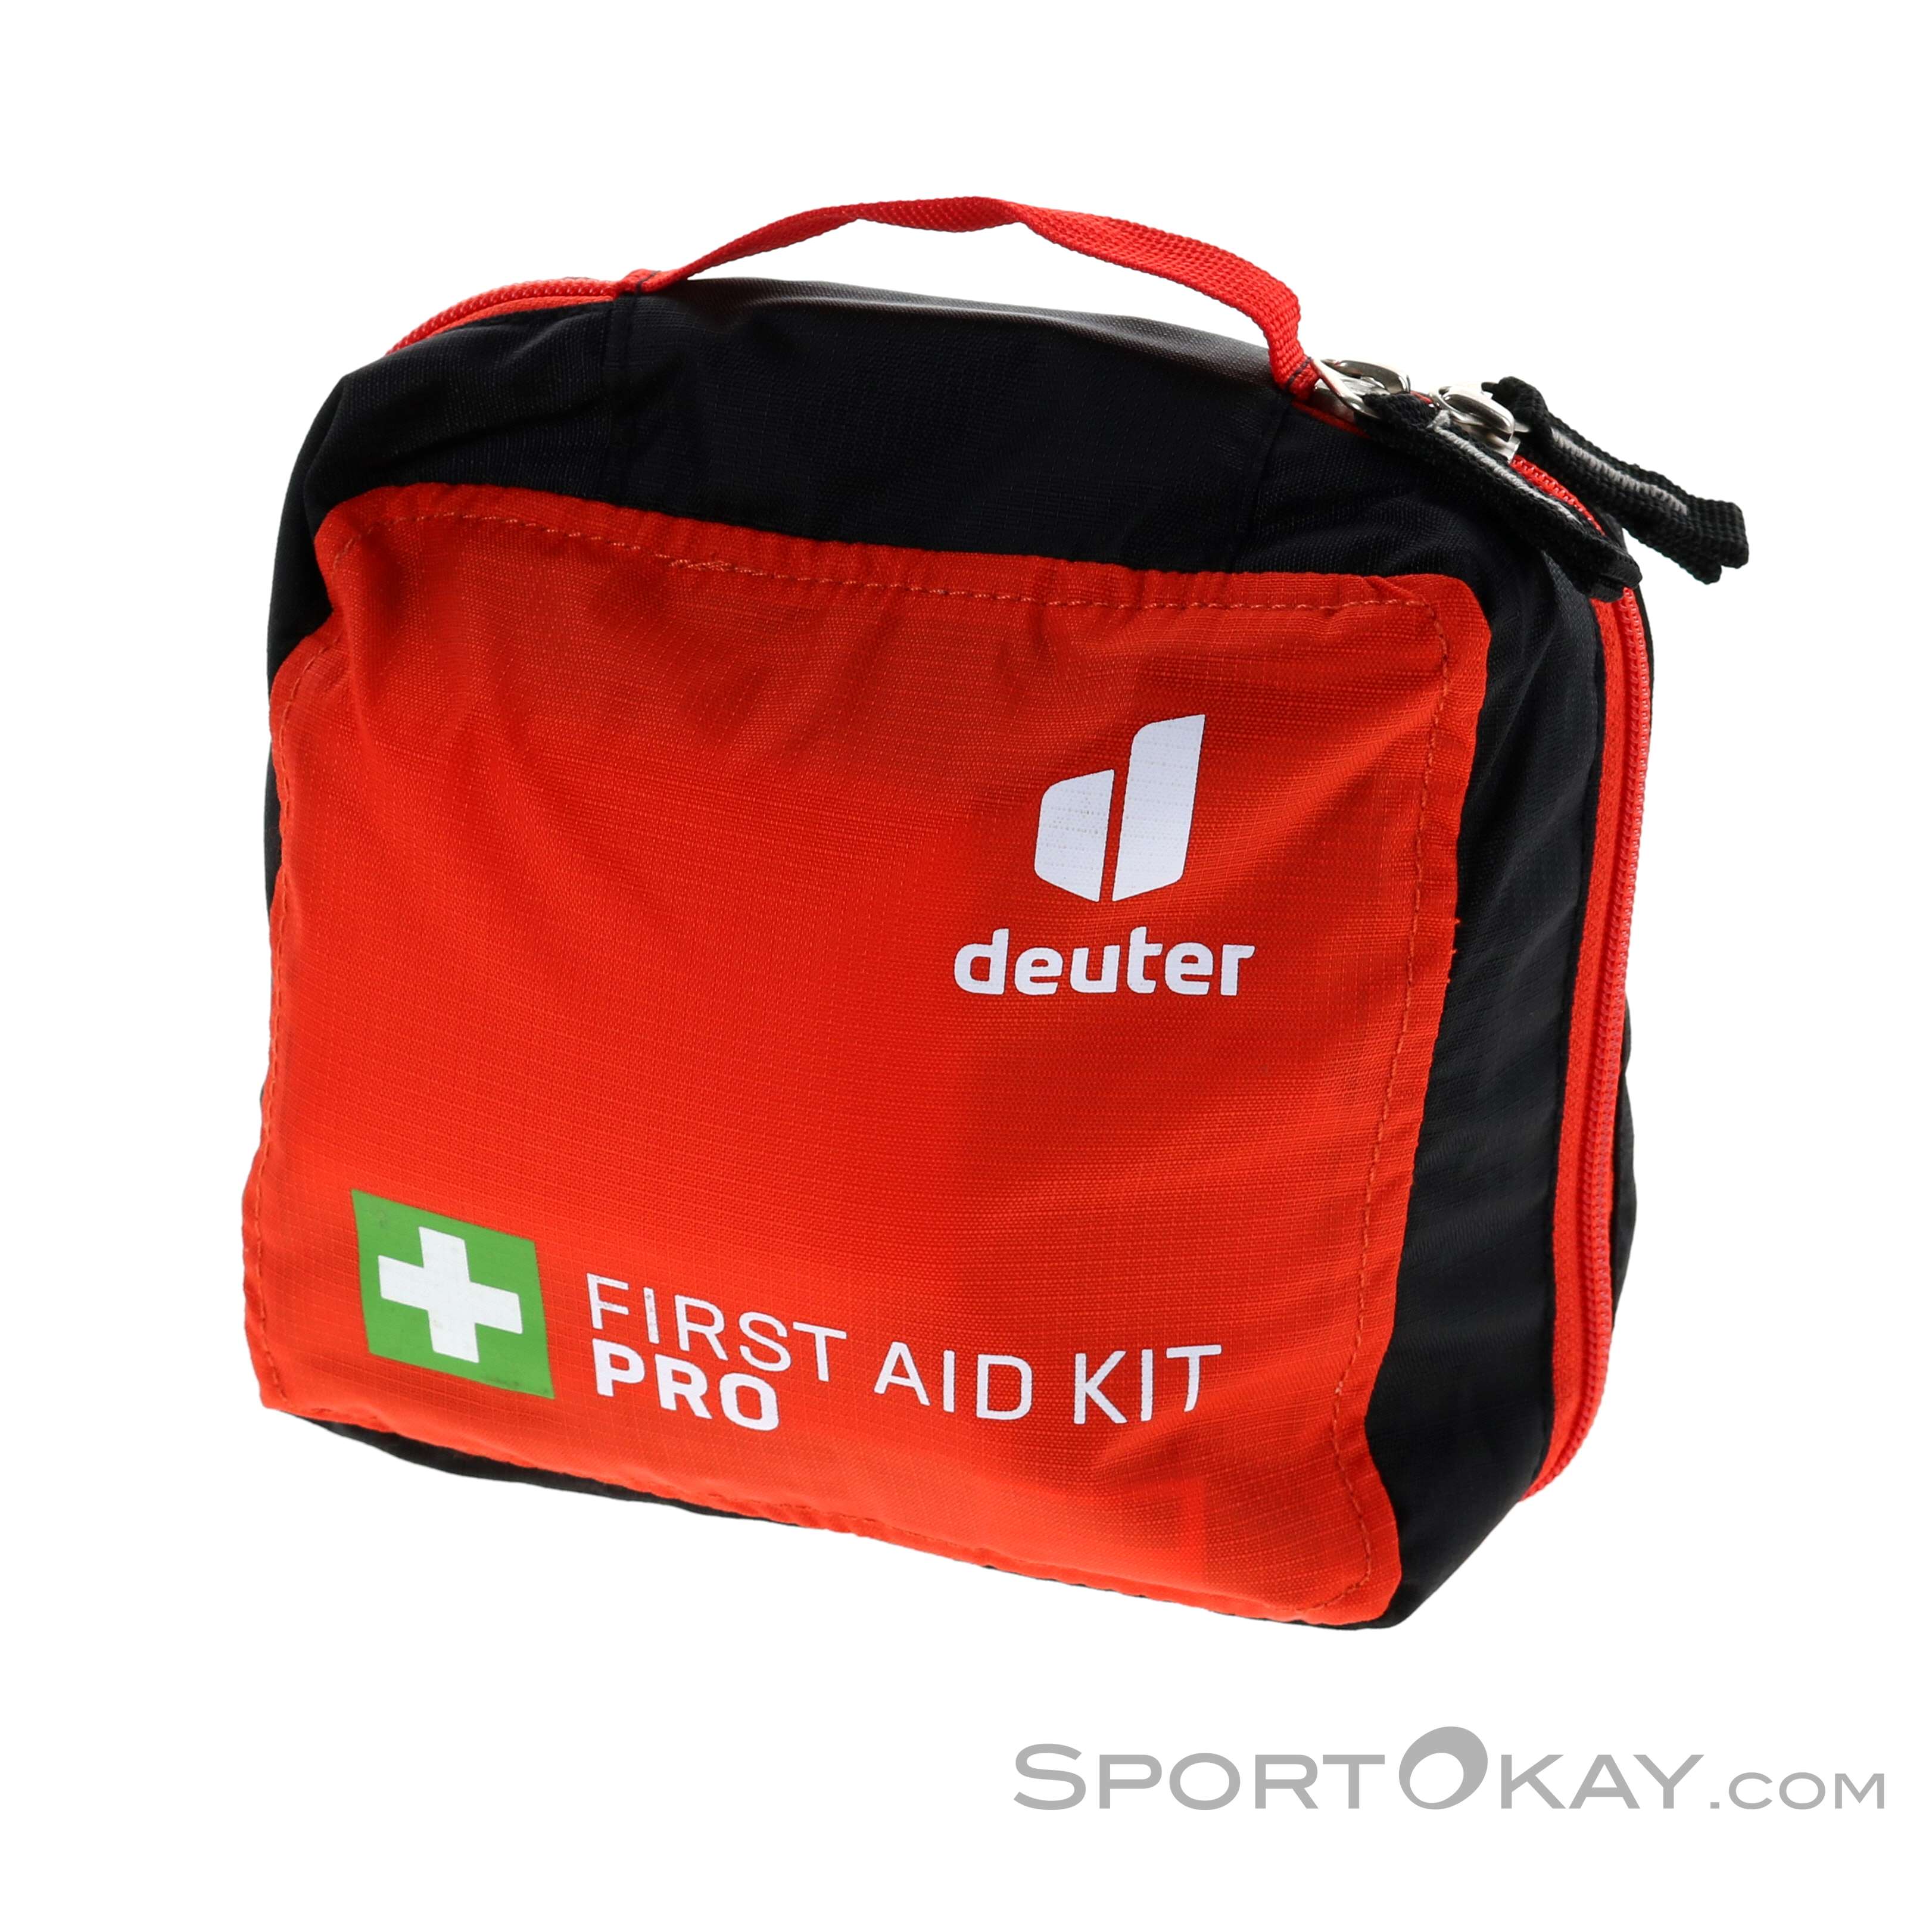 Deuter First Aid Kit Pro Erste Hilfe Set - Erste Hilfe Sets